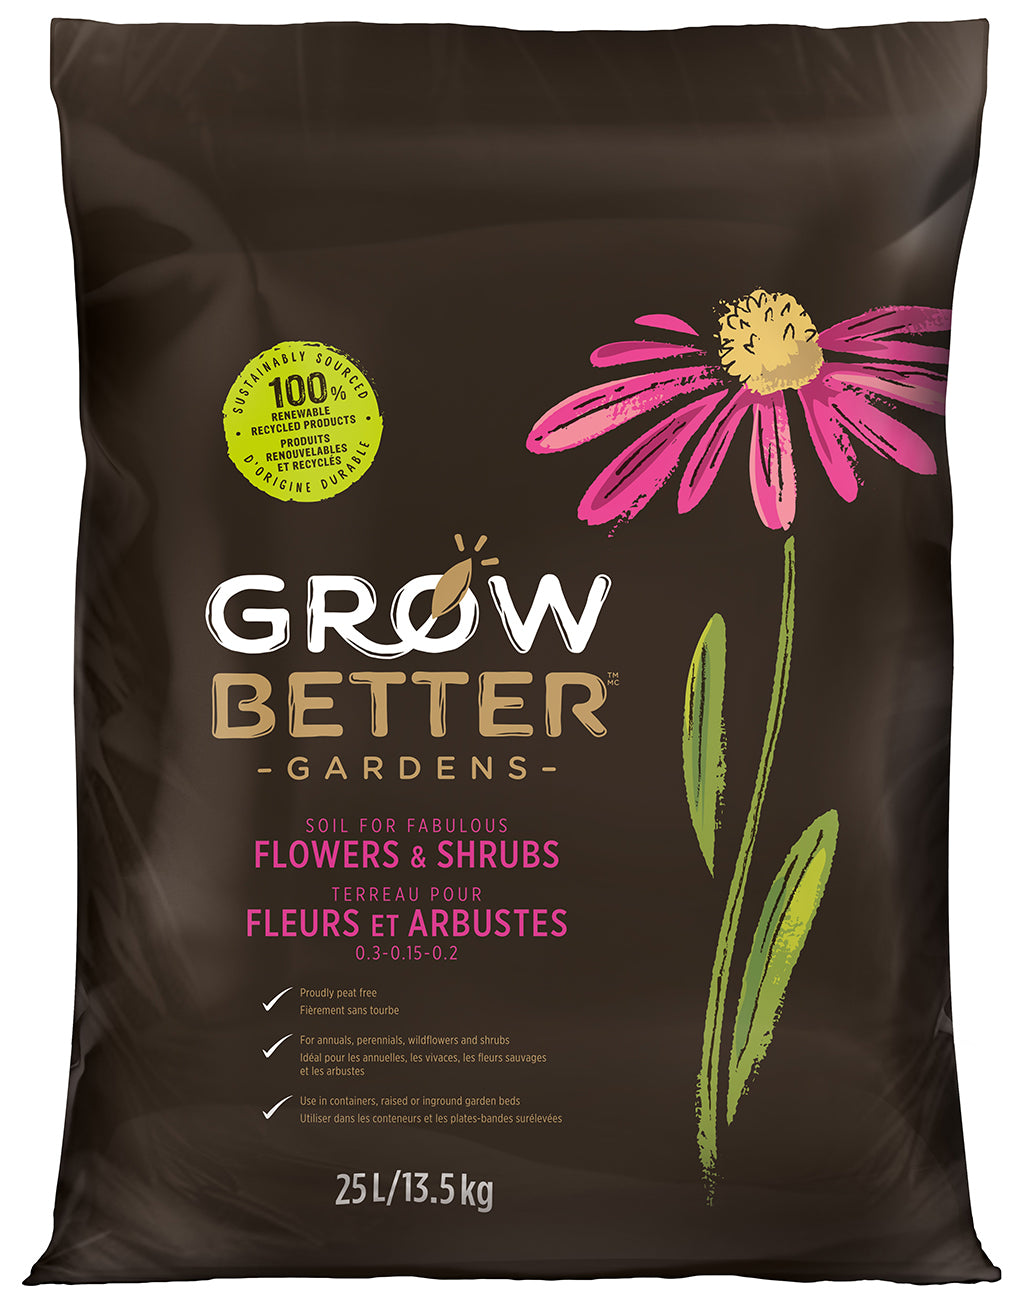 Soil for Fabulous Flowers & Shrubs (25L)